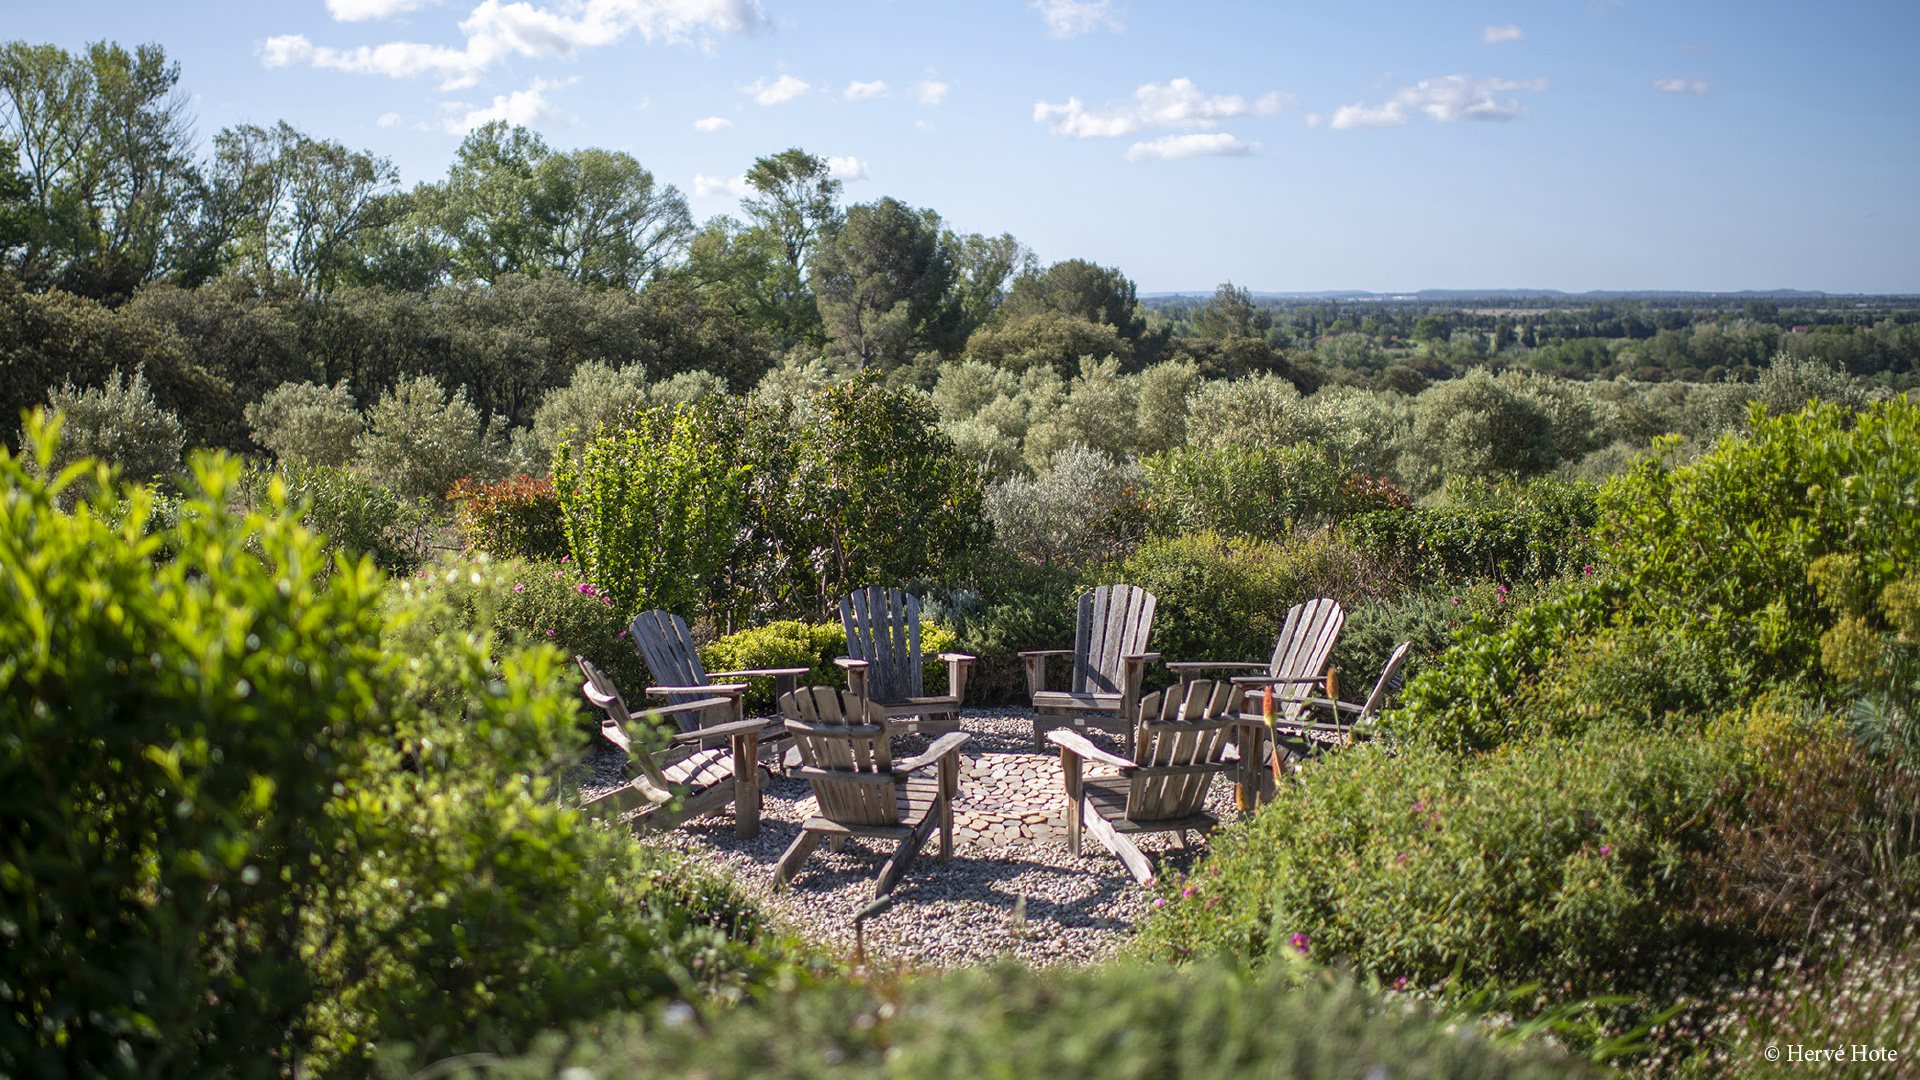 Mieten Sie privaten Pool üppige Gärten Luxus Provence